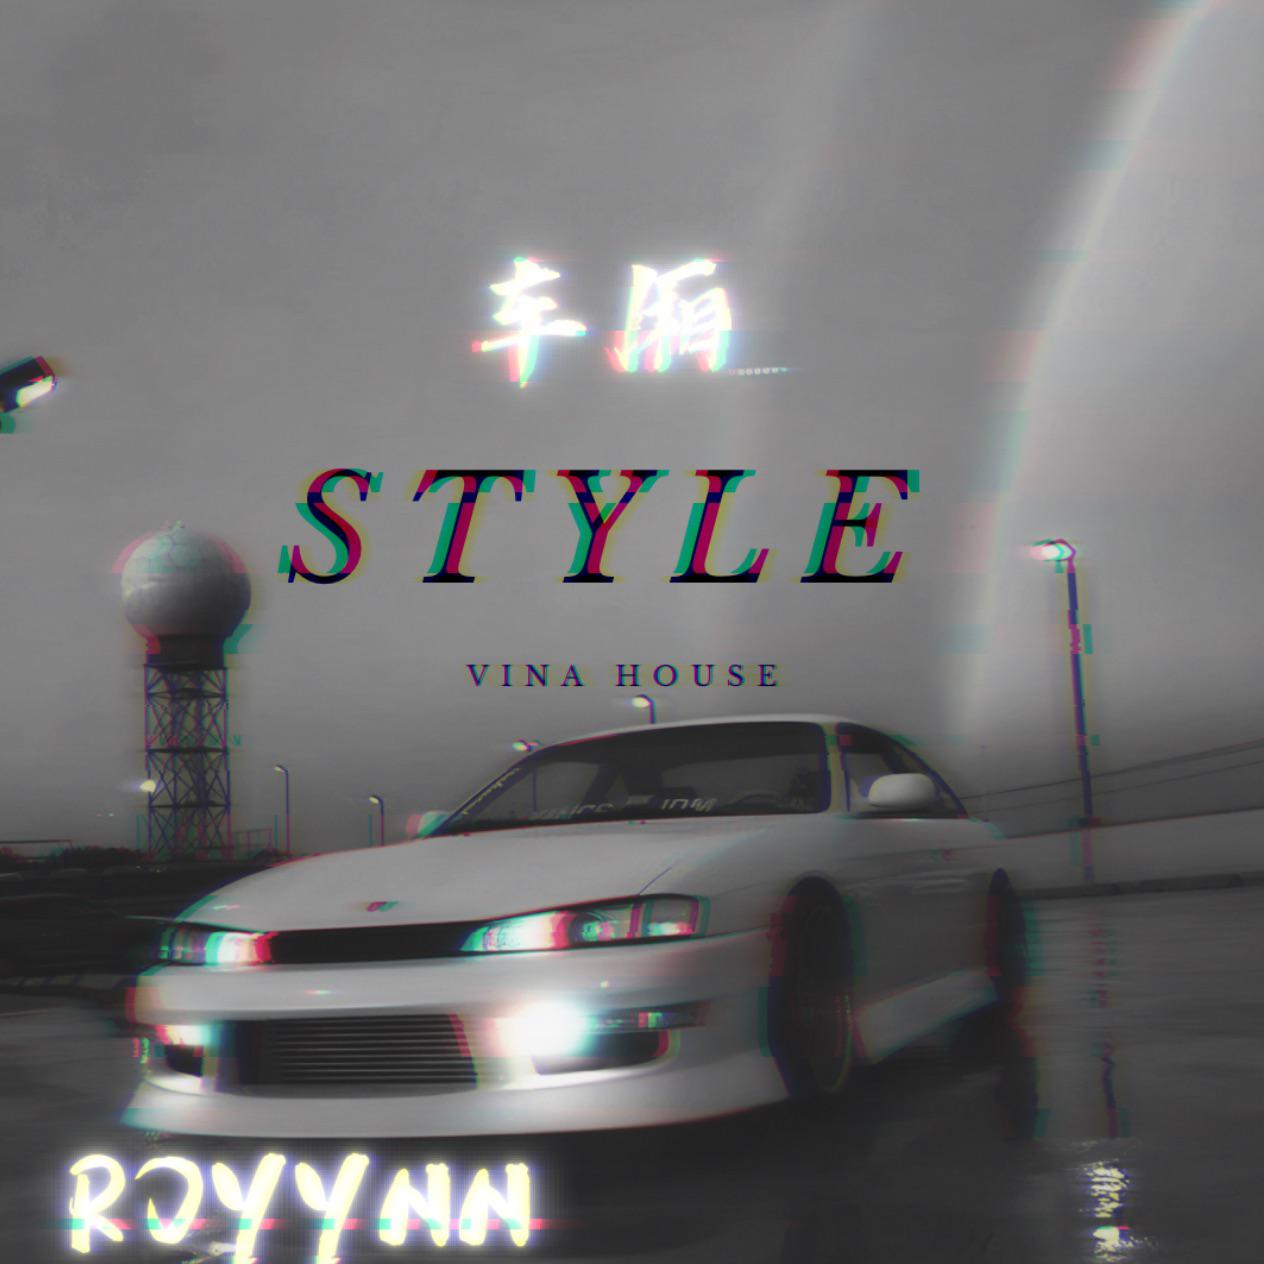 ROYYNN - 车厢 style